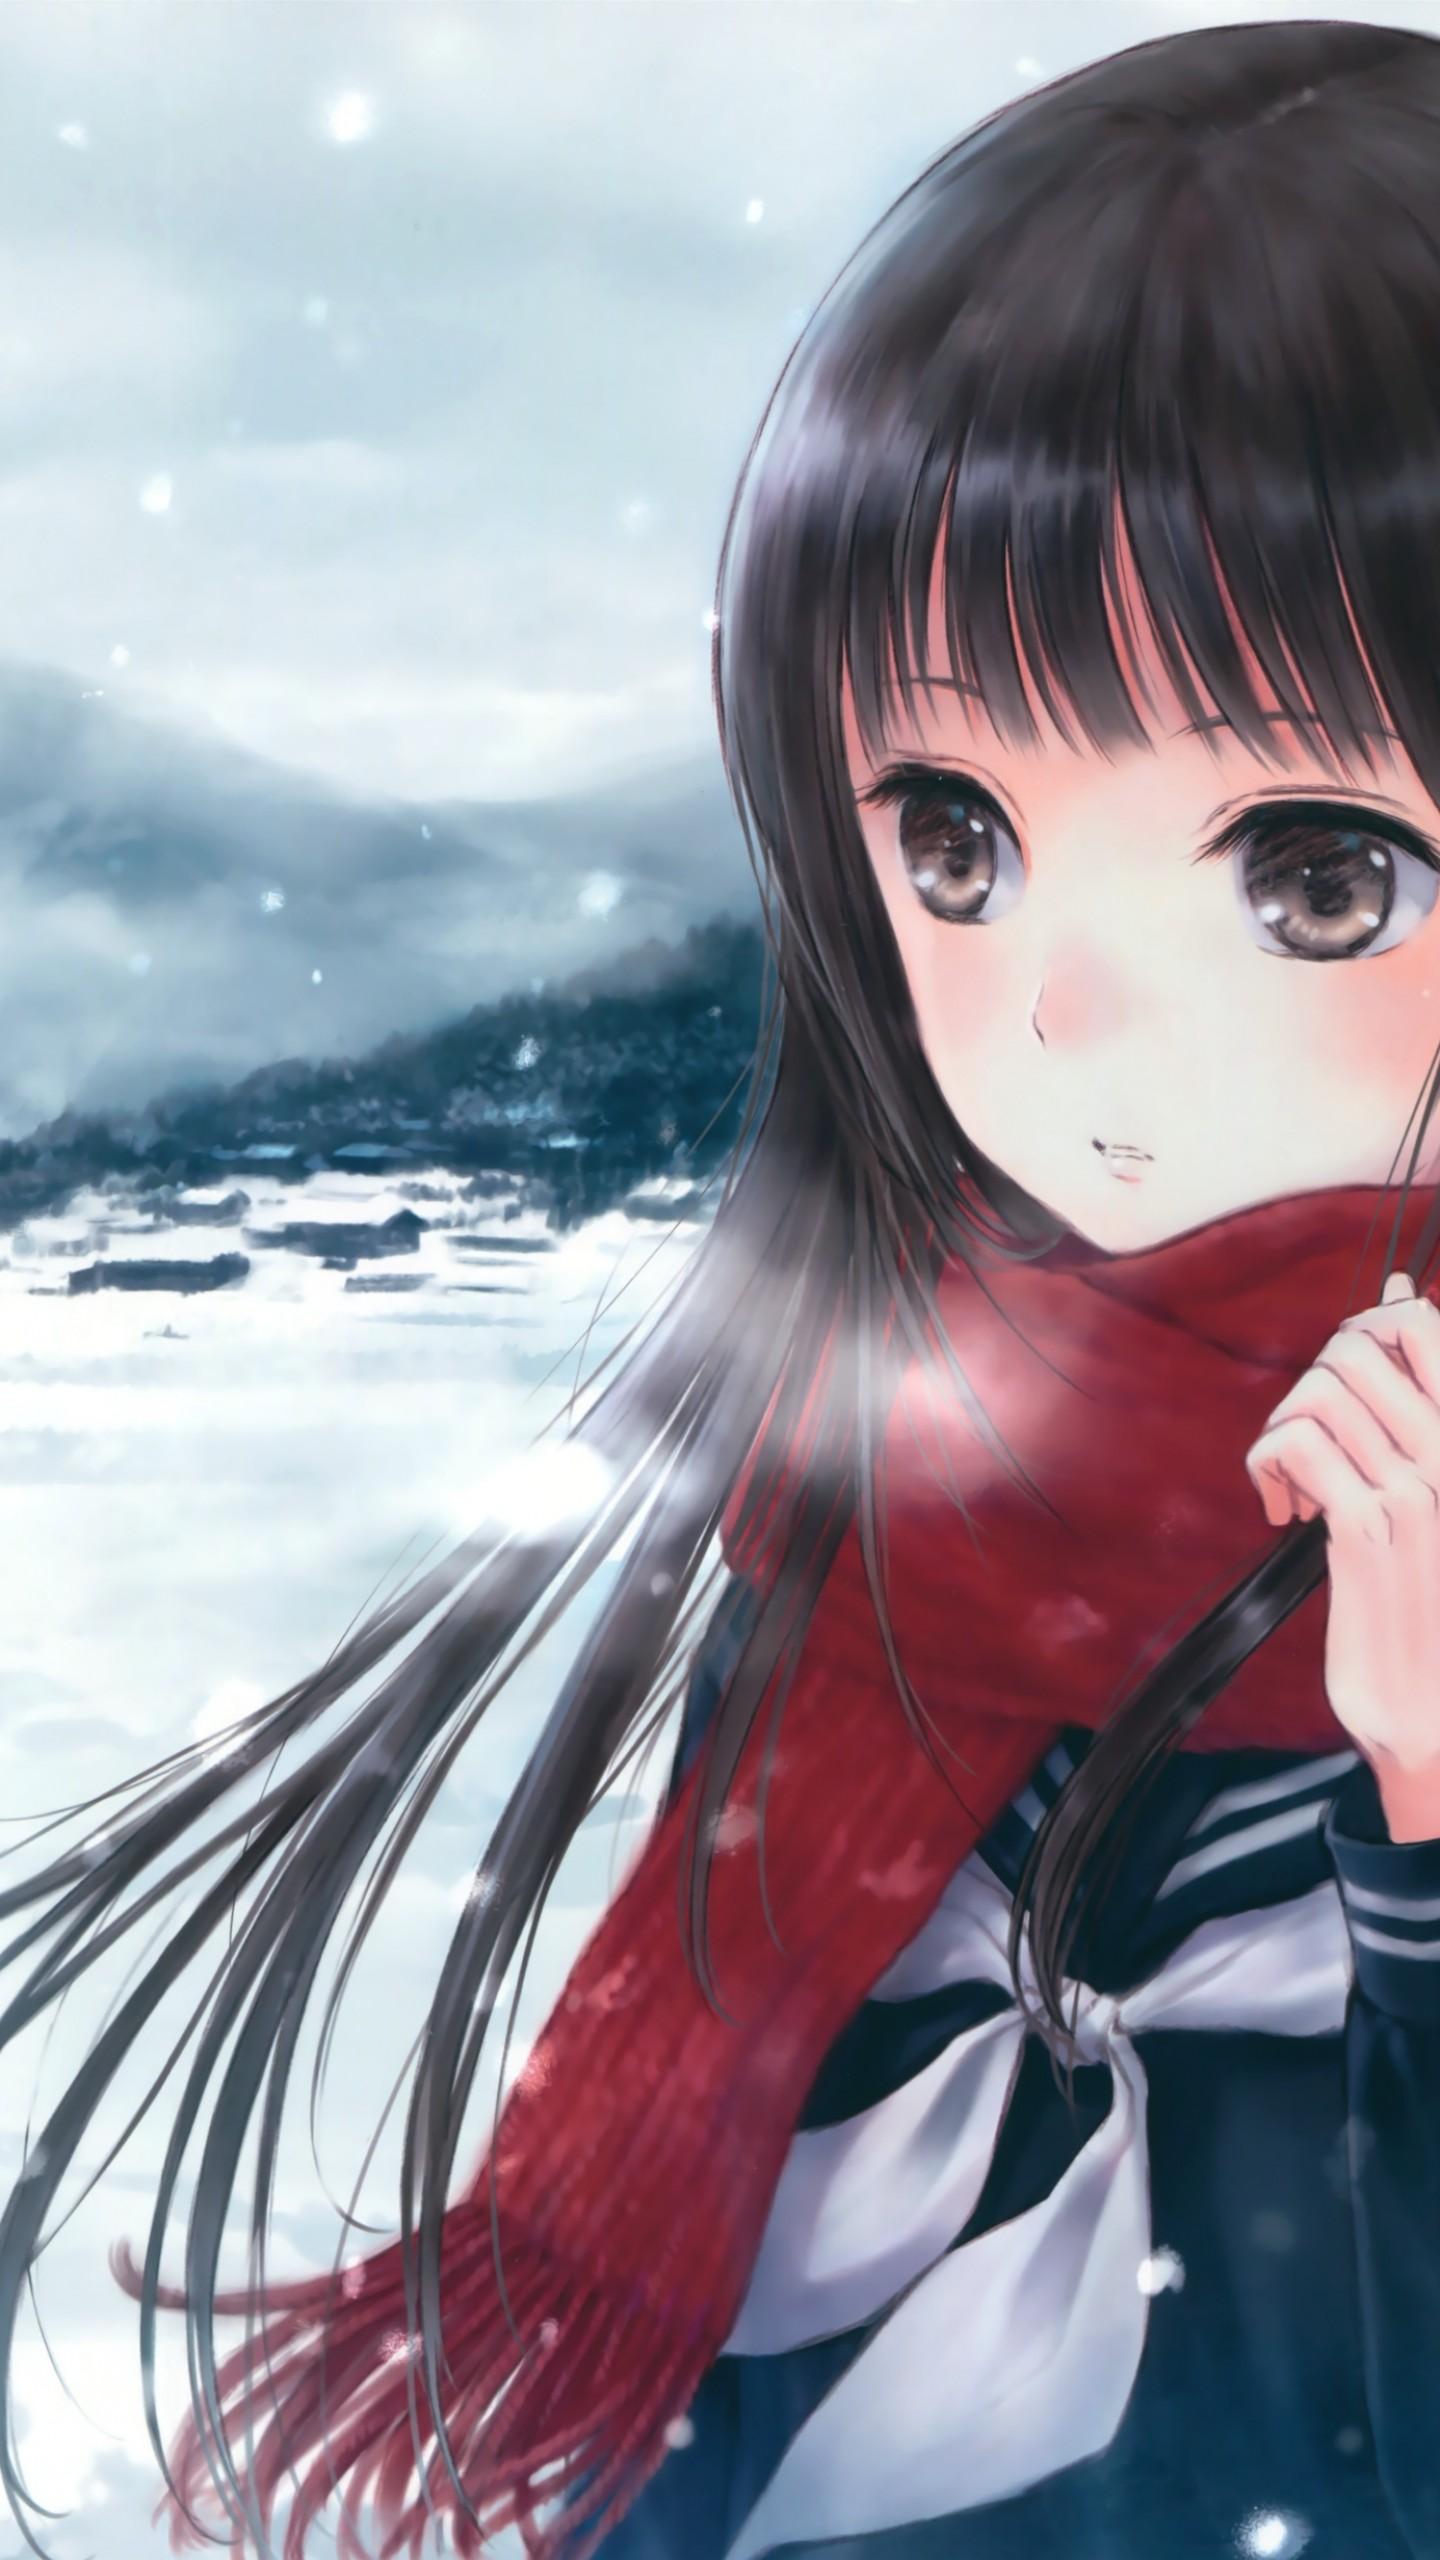 Wallpapers anime, girl, beauty, winter, 4k, Art